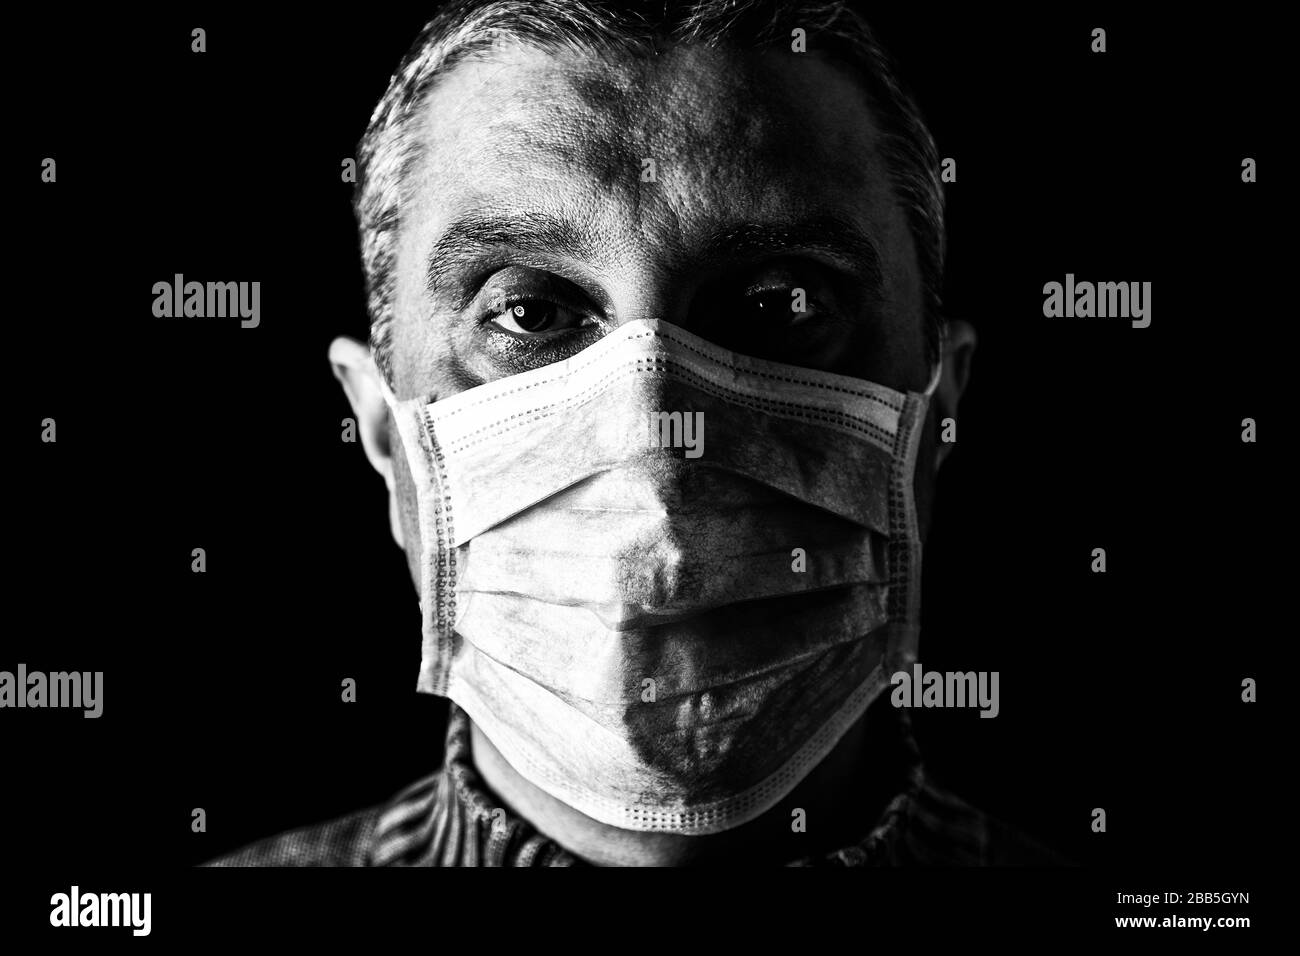 Mann mit chirurgischer Maske. Pandemie oder Epidemie und Schreckliches, Angst- oder Gefahrenkonzept. Schutz vor biologischer Gefährdung wie COVID-19 alias Coronavirus. Nahanschluss Stockfoto